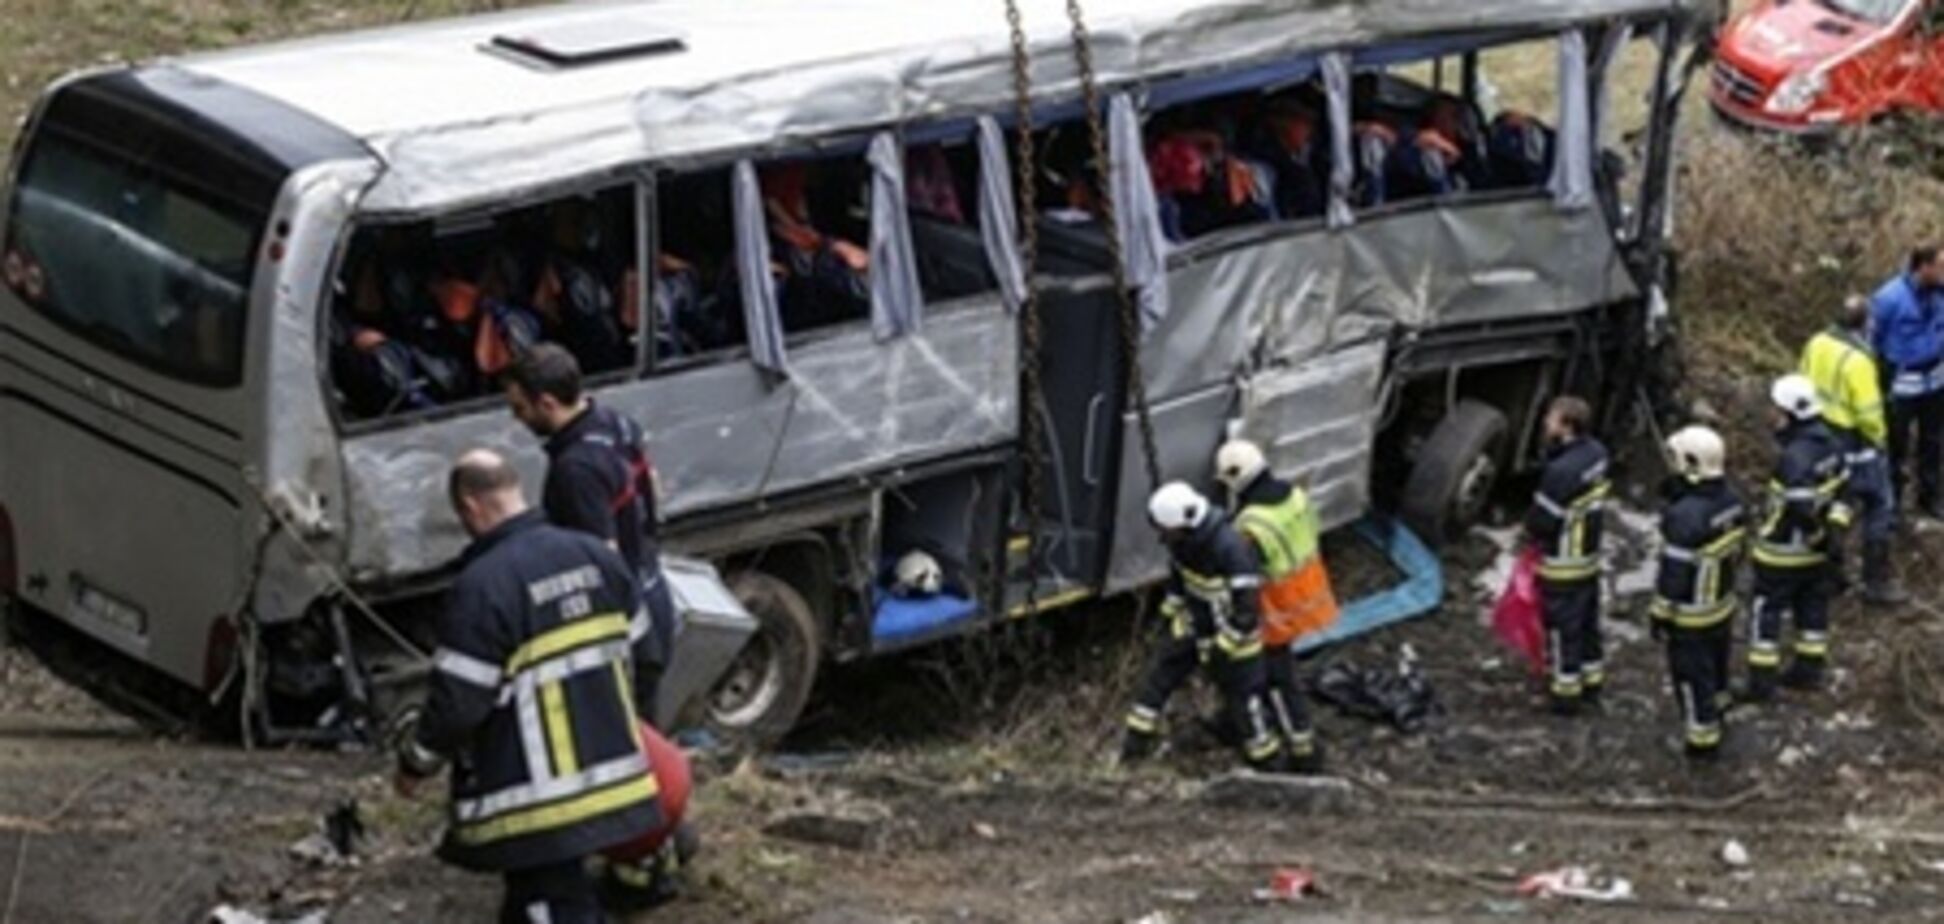 МИД: граждан Украины не было в попавшем в ДТП в Бельгии автобусе 